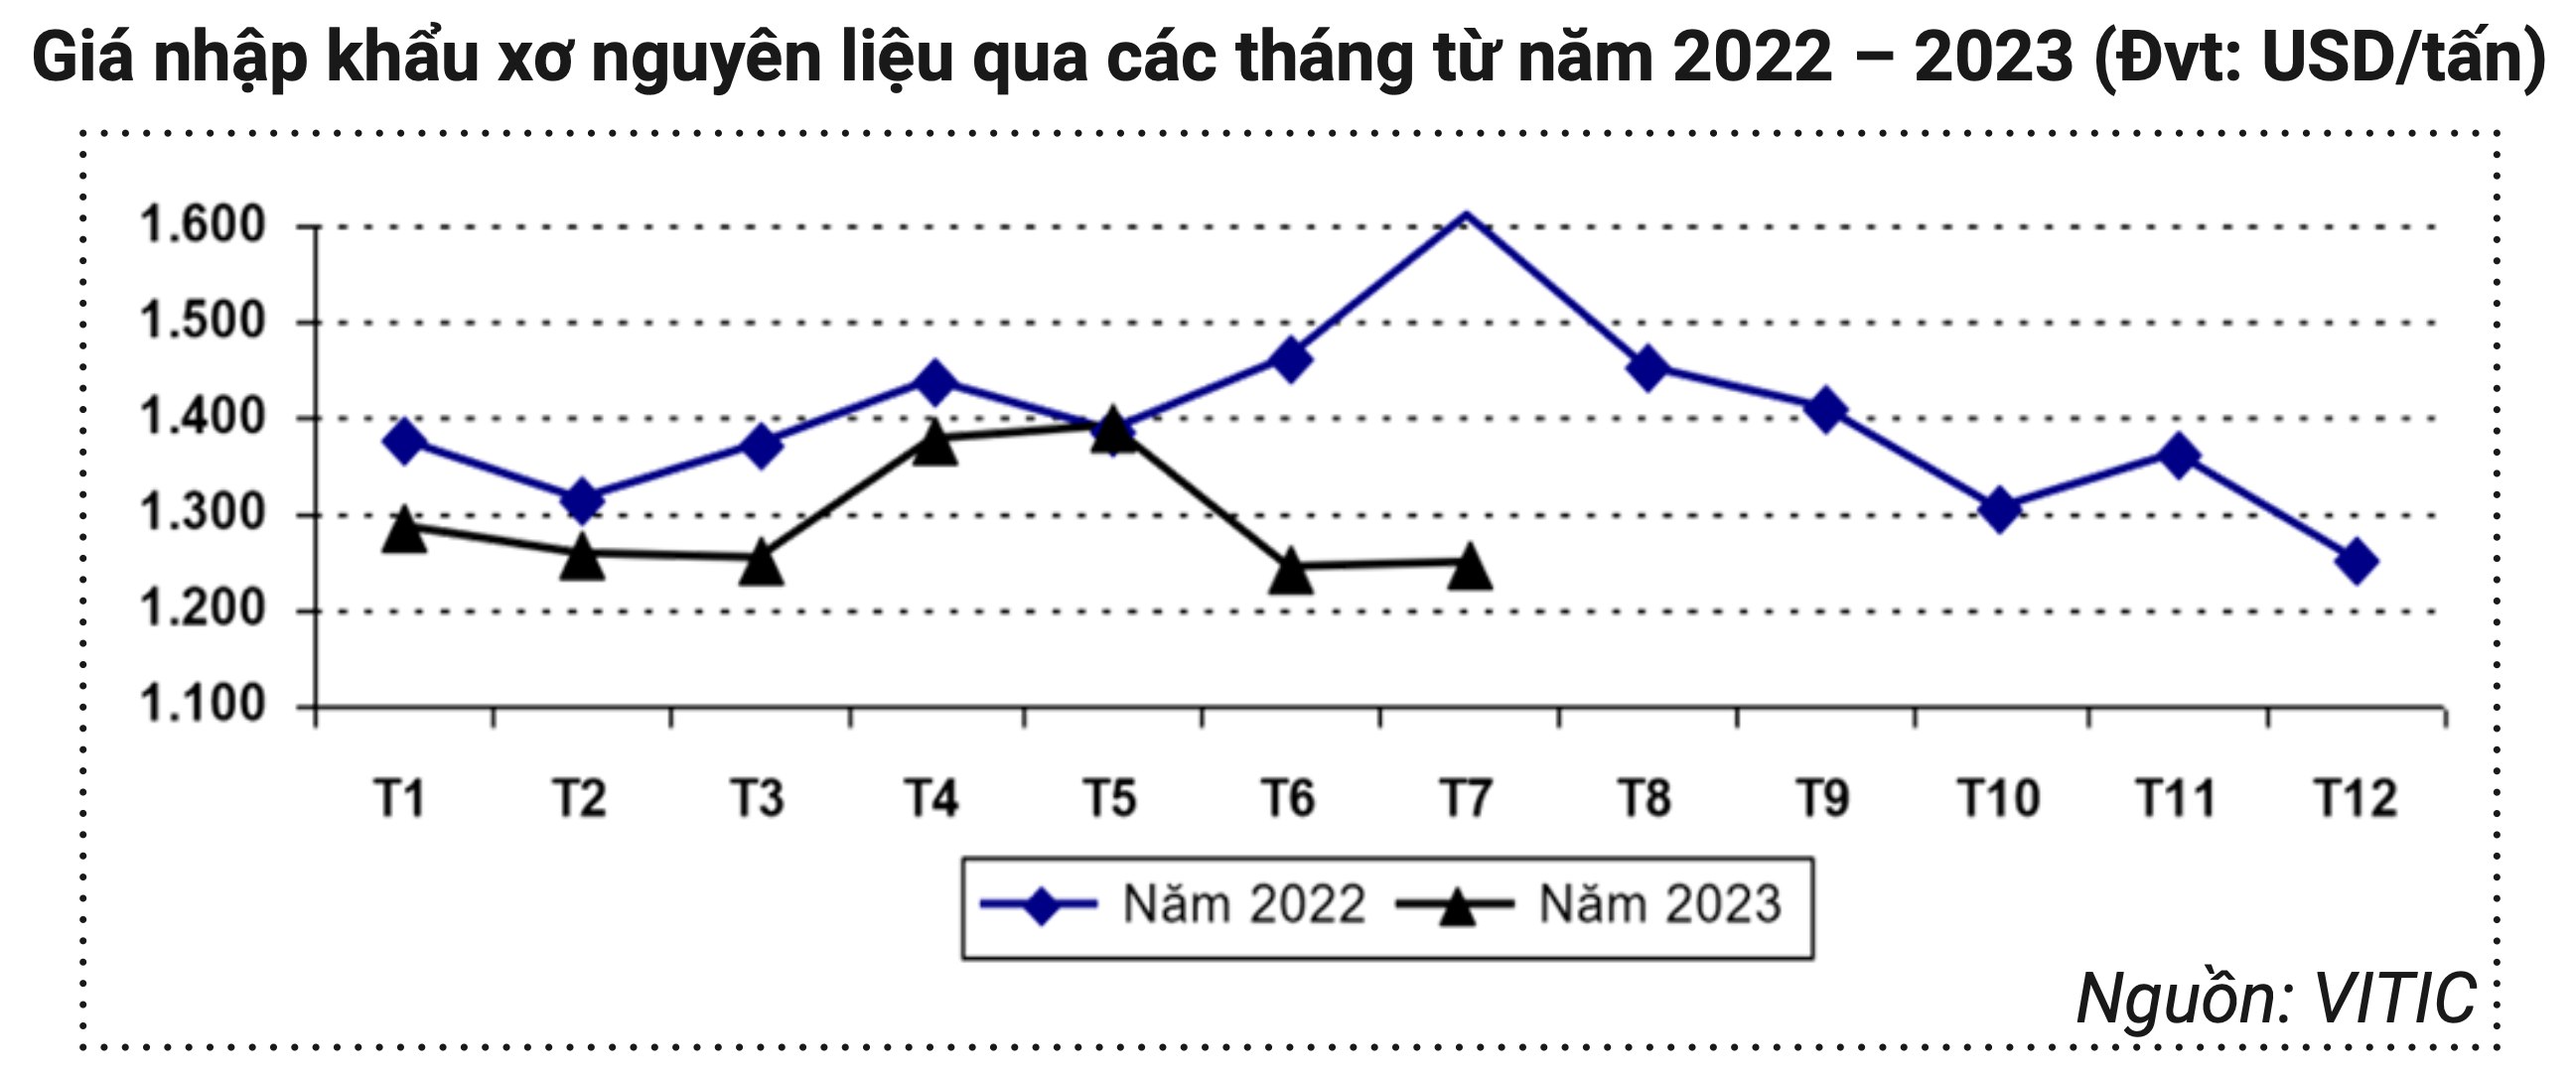 Giá nhập khẩu xơ nguyên liệu qua các tháng năm 2022 và 2023 (Nguồn: VITIC)